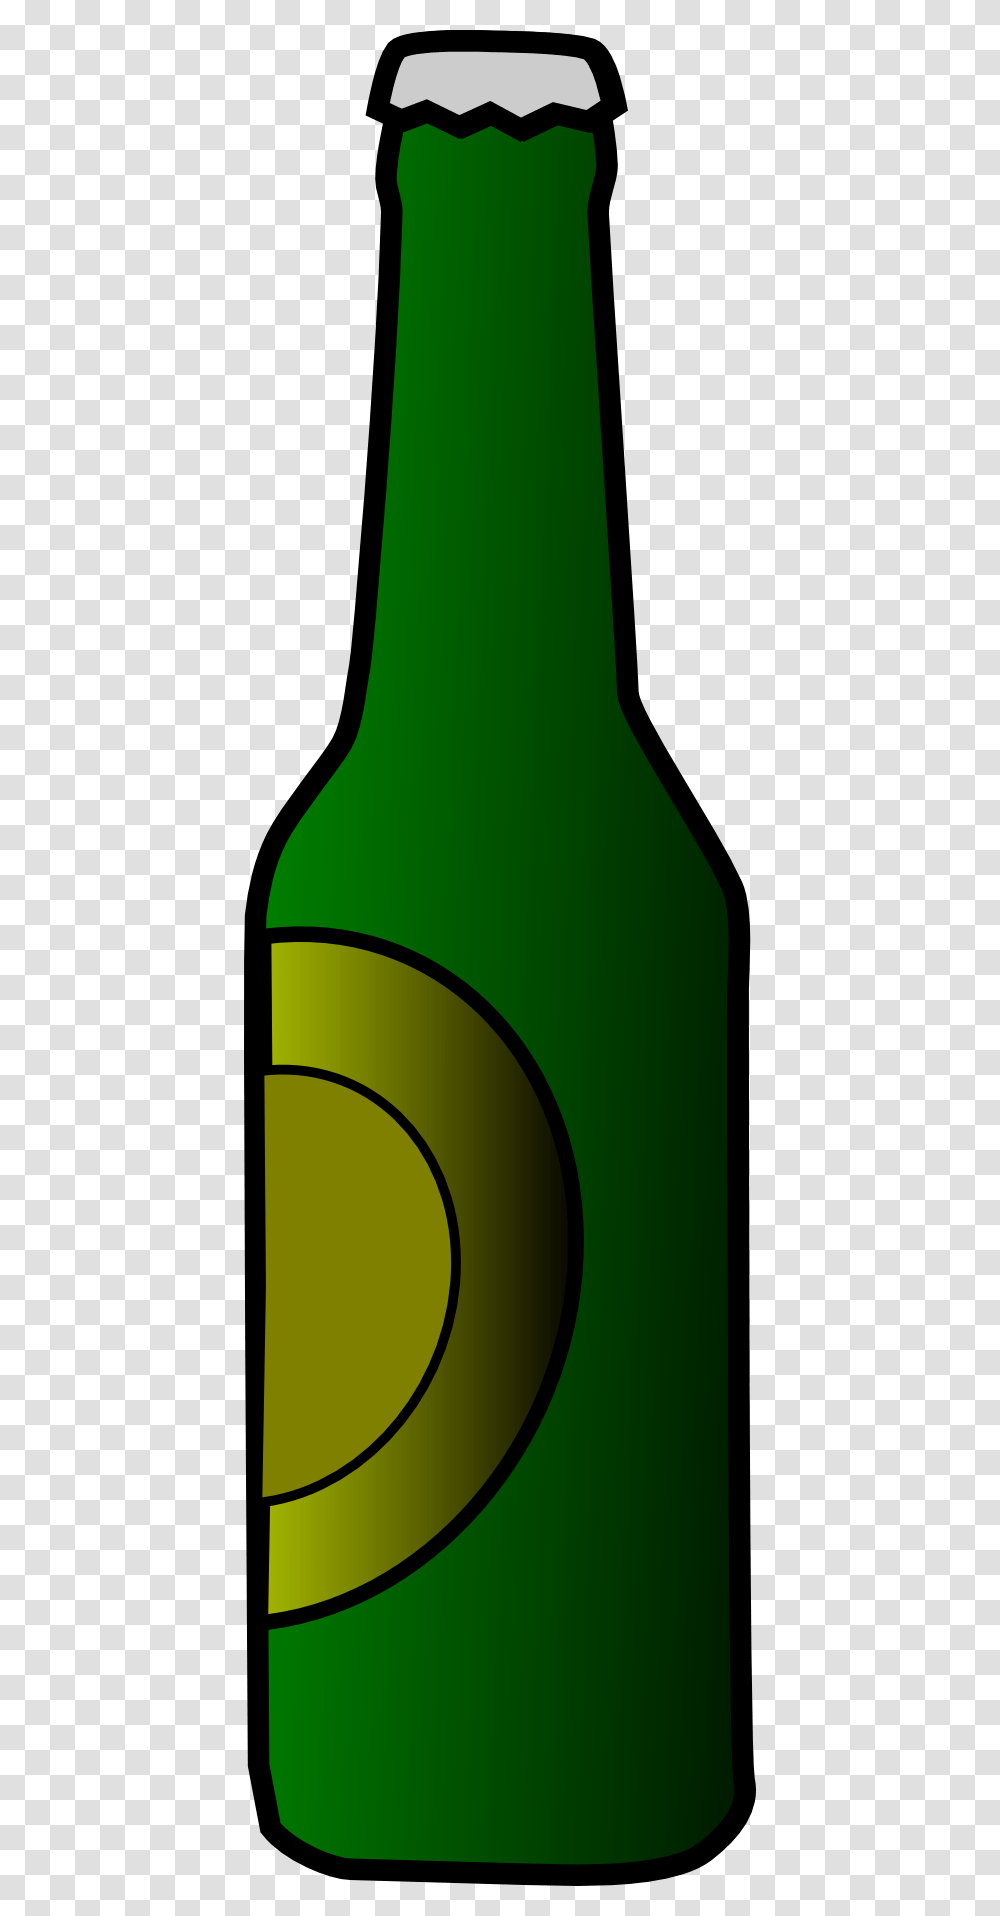 Alcohol Bottle Cliparts, Beverage, Drink, Beer, Beer Bottle Transparent Png